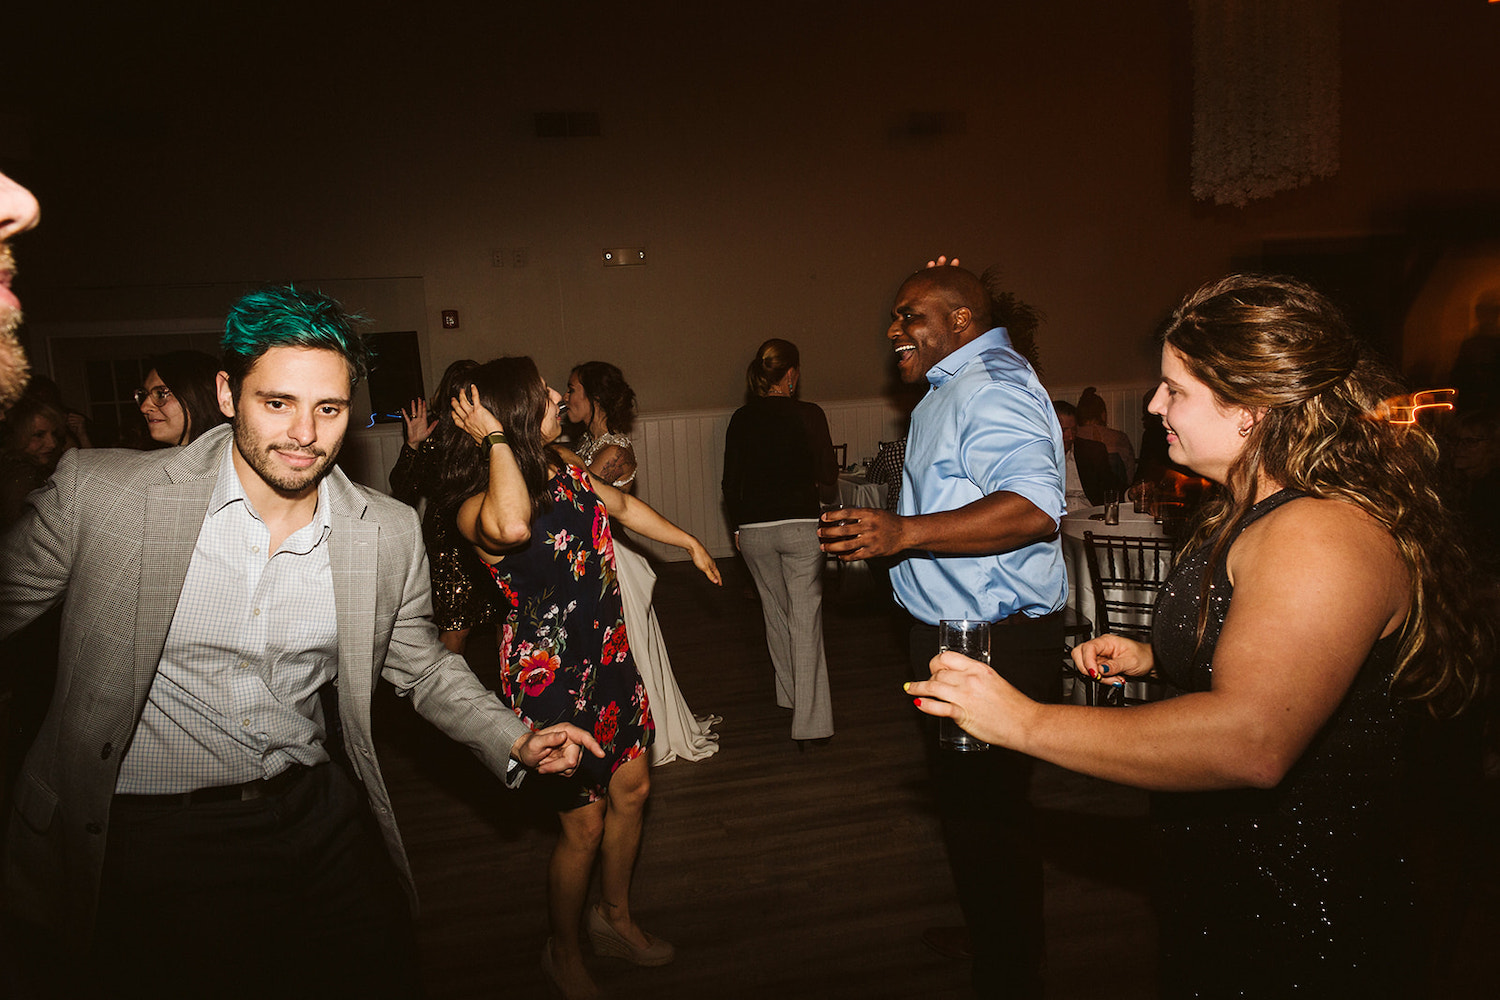 wedding guests dance in the dark dance floor